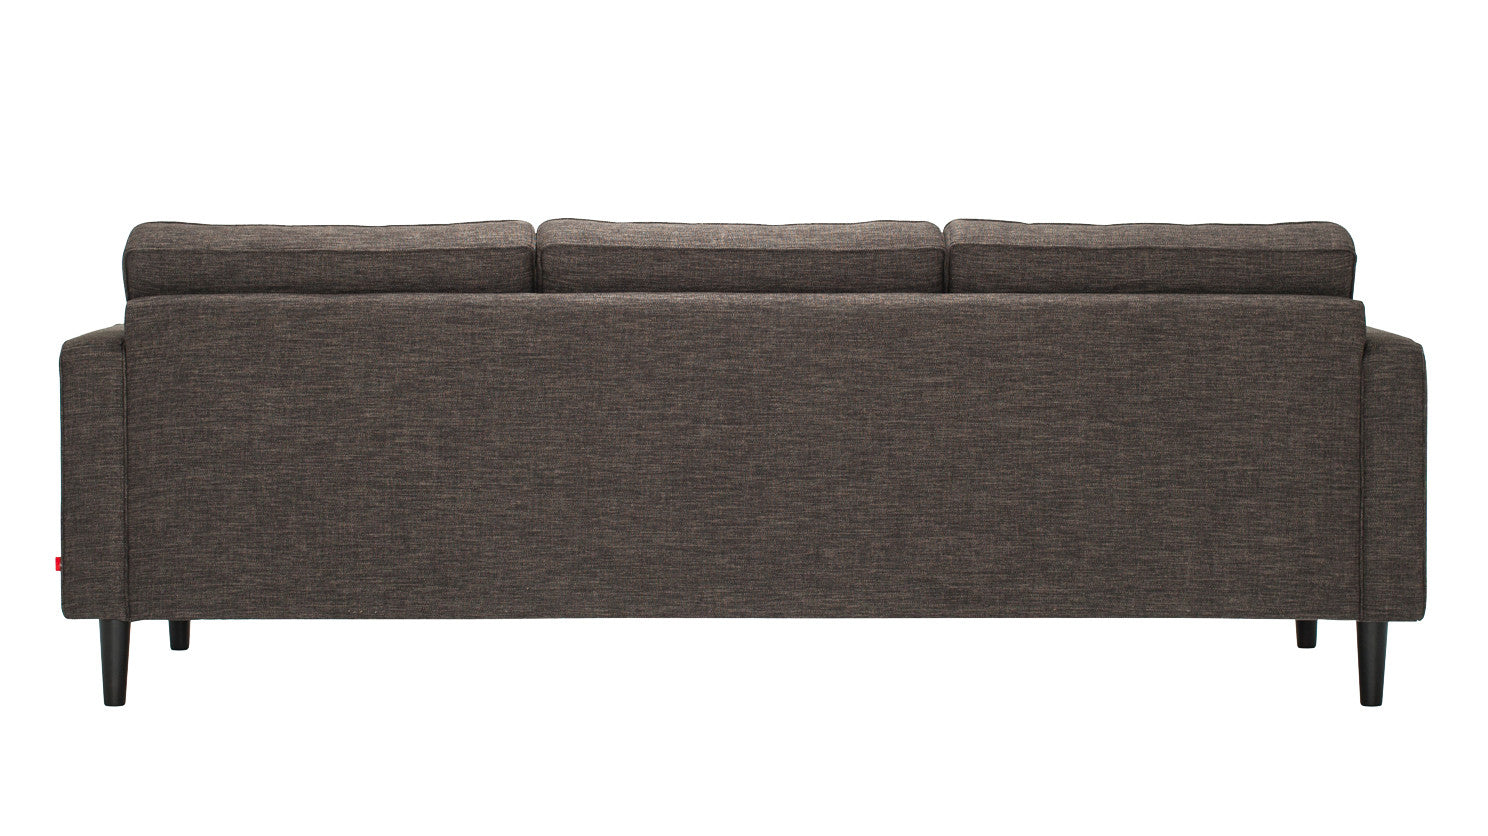 Reverie 3 Seat Fabric Sofa